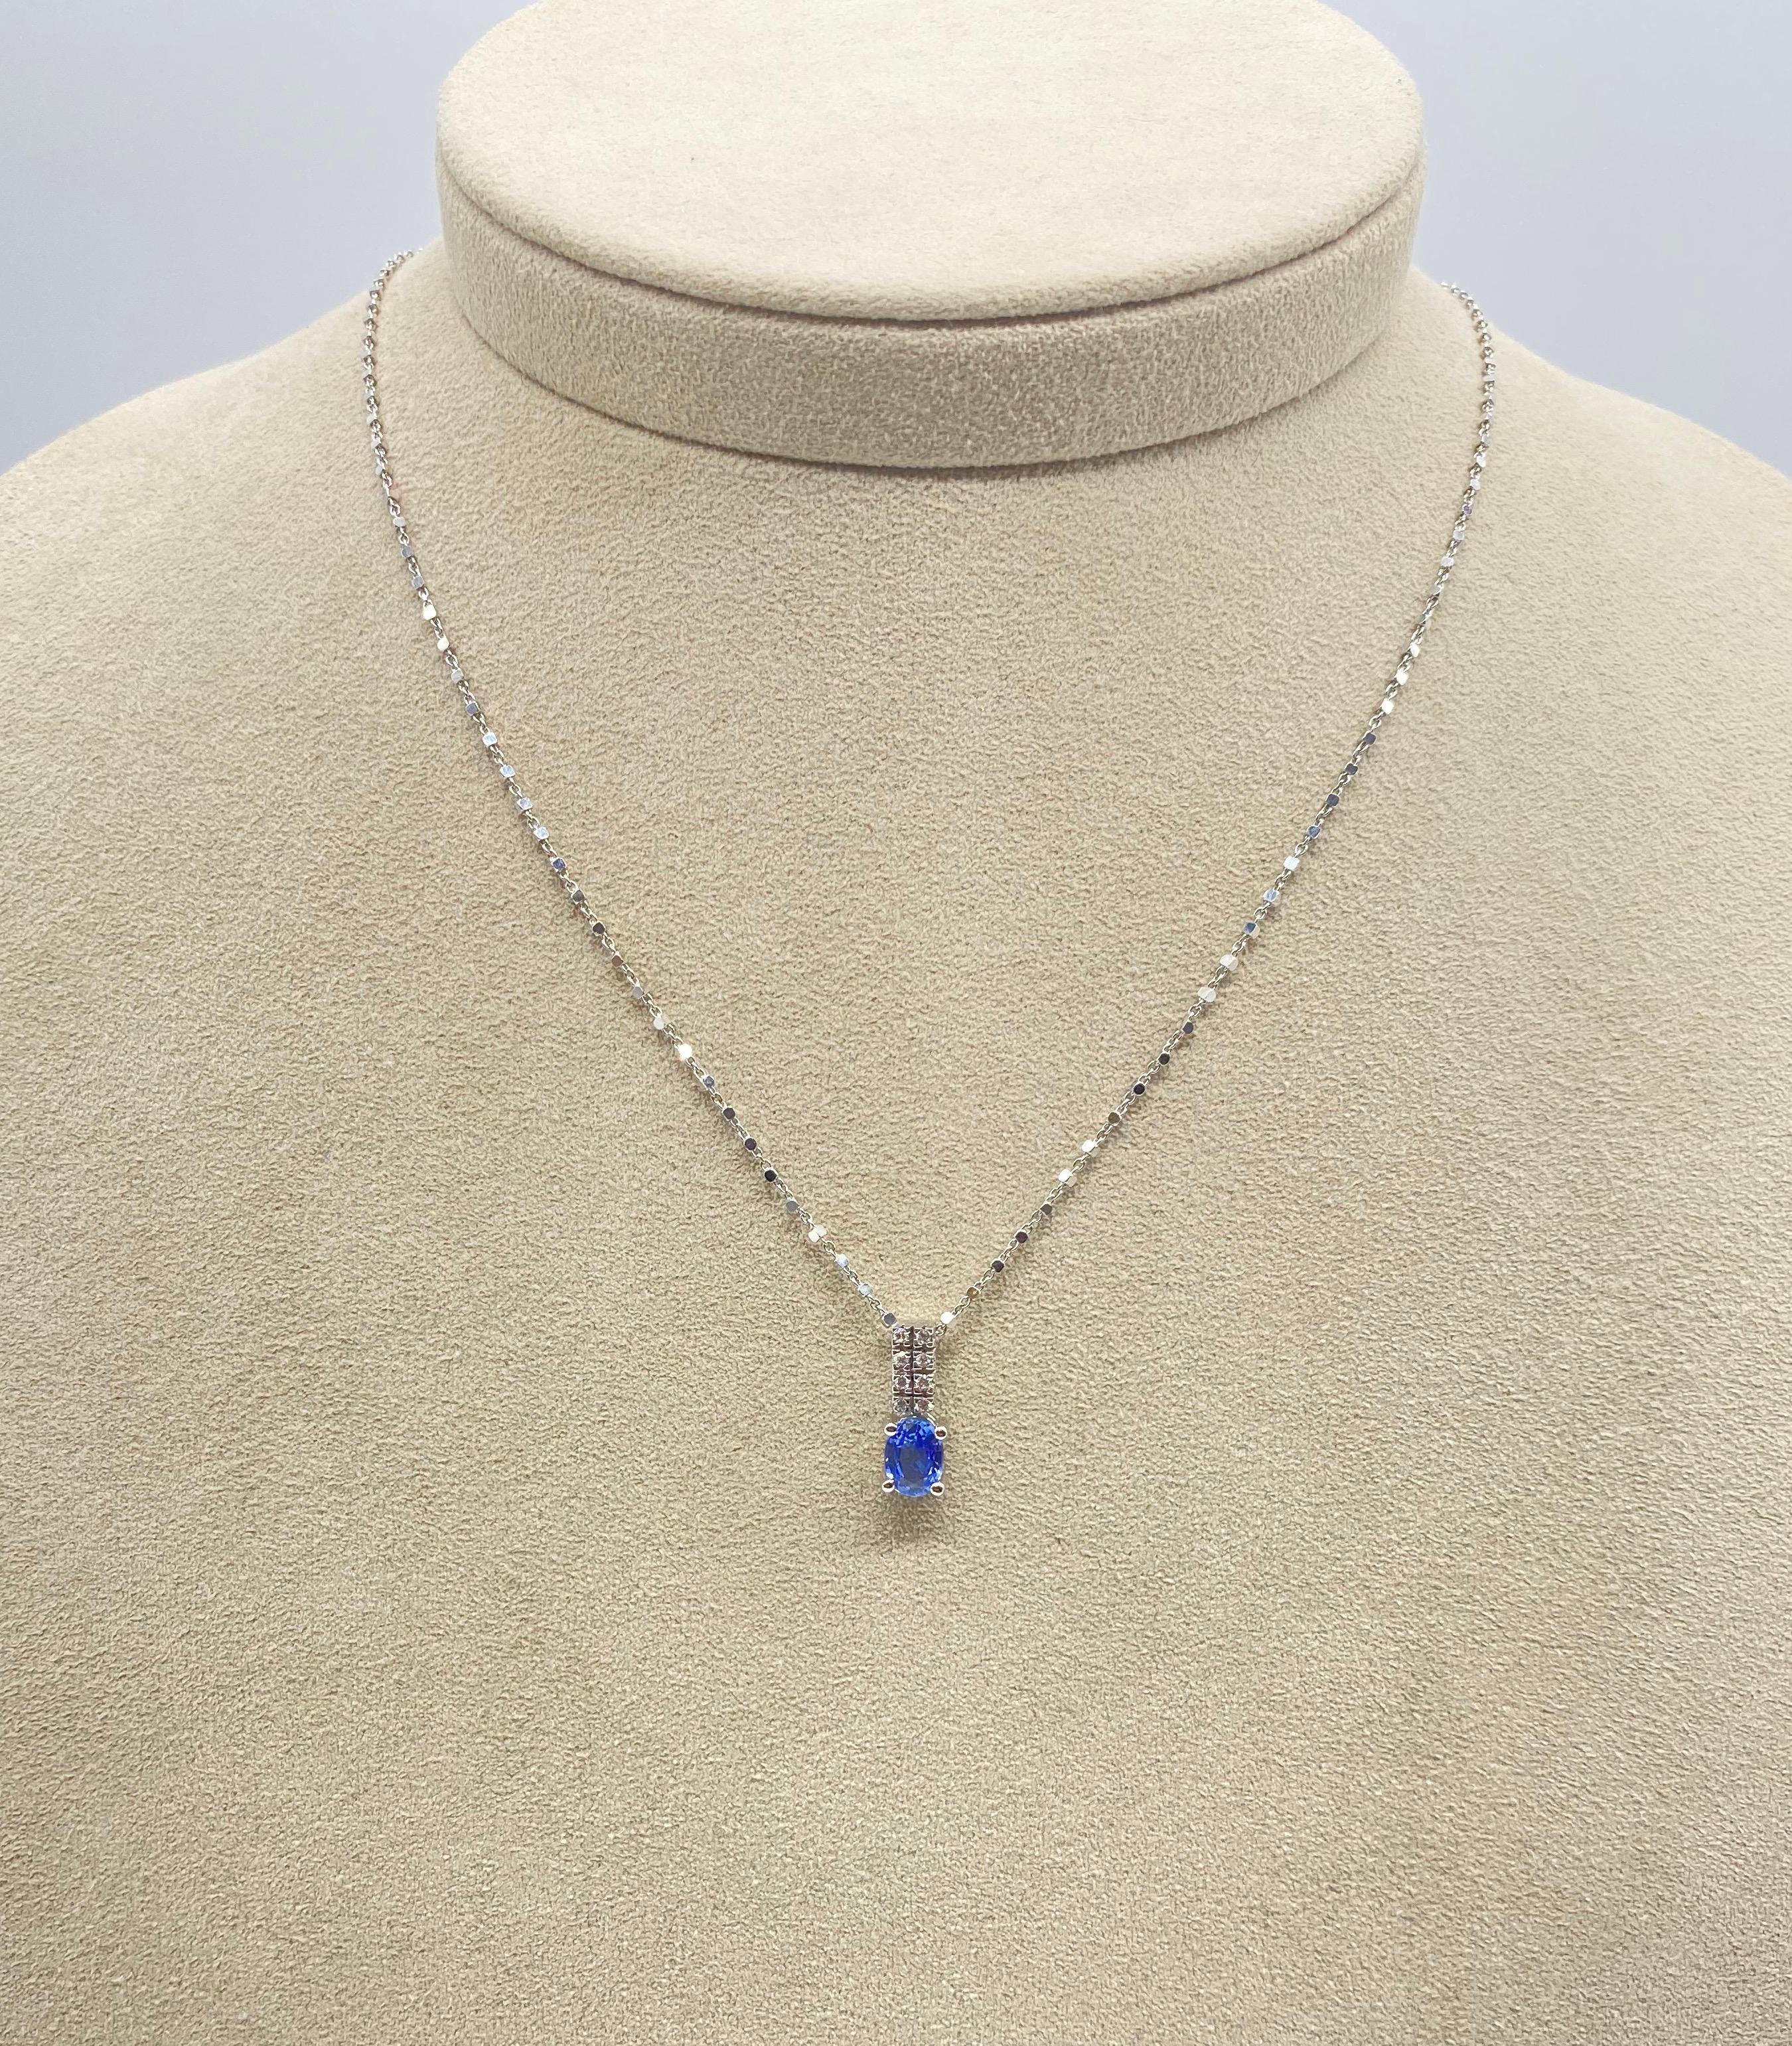 Découvrez ce superbe collier en or blanc 18 carats, orné de diamants étincelants et d'un saphir bleu ovale, offrant une combinaison parfaite de beauté et d'élégance. Ce collier chaîne présente une maille originale qui ajoute une touche de